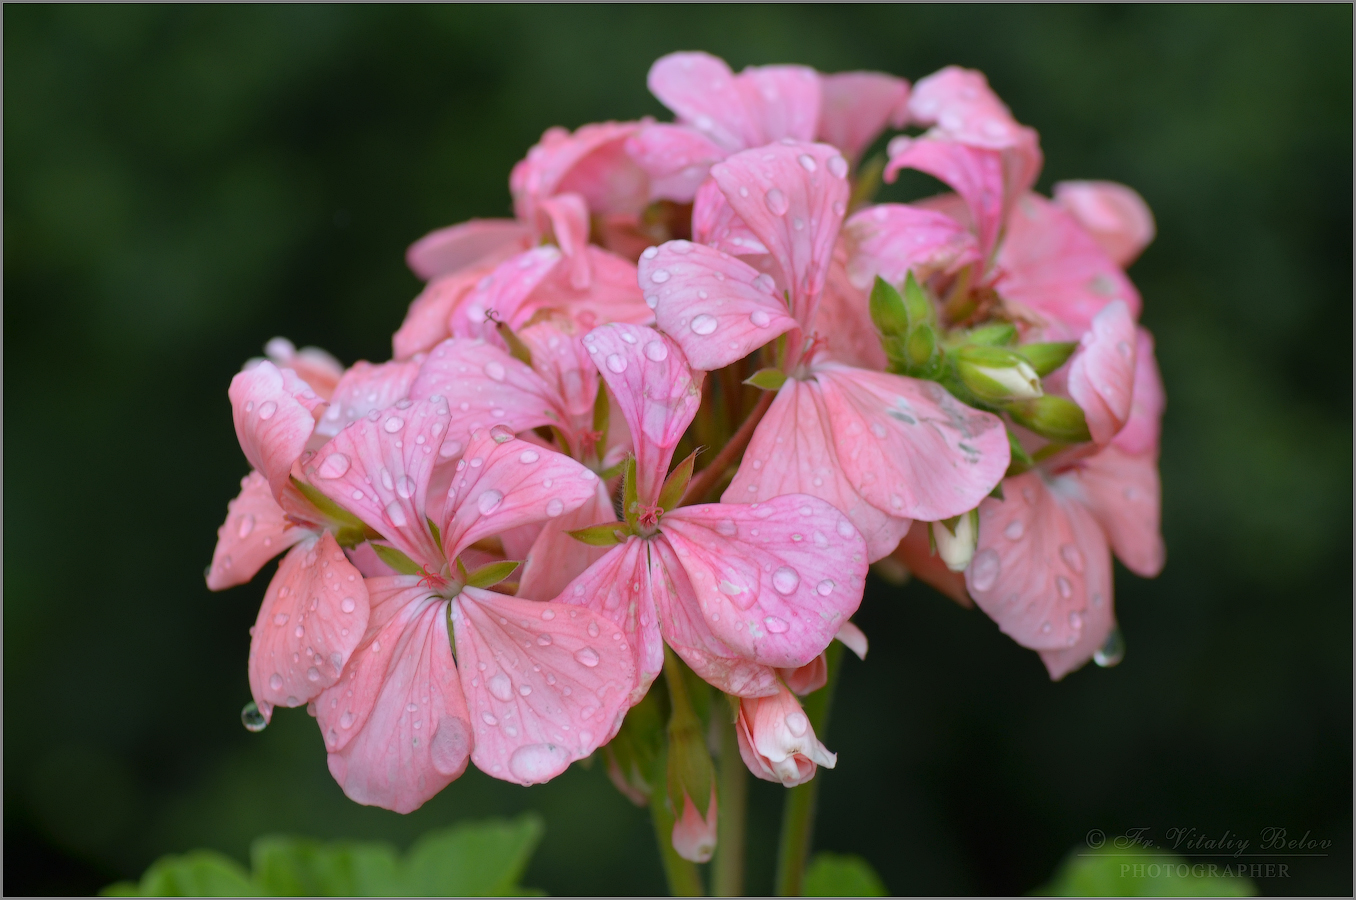  Упали капли дождевые, на нежный розовый цветок...